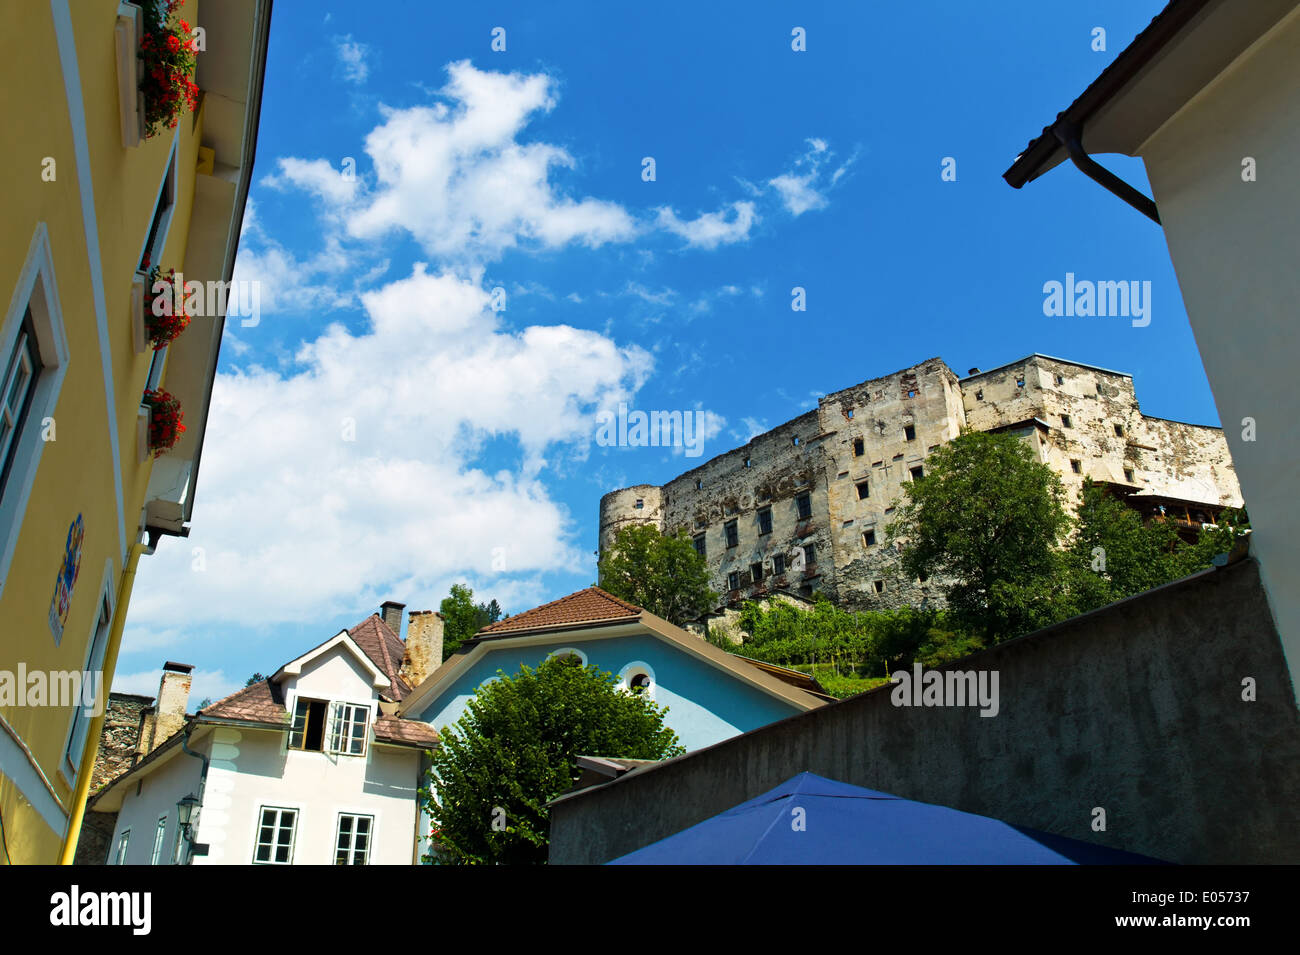 Castle in Gmuend, Carinthia, Austria, Burg in Gmuend, Kaernten, oesterreich Stock Photo